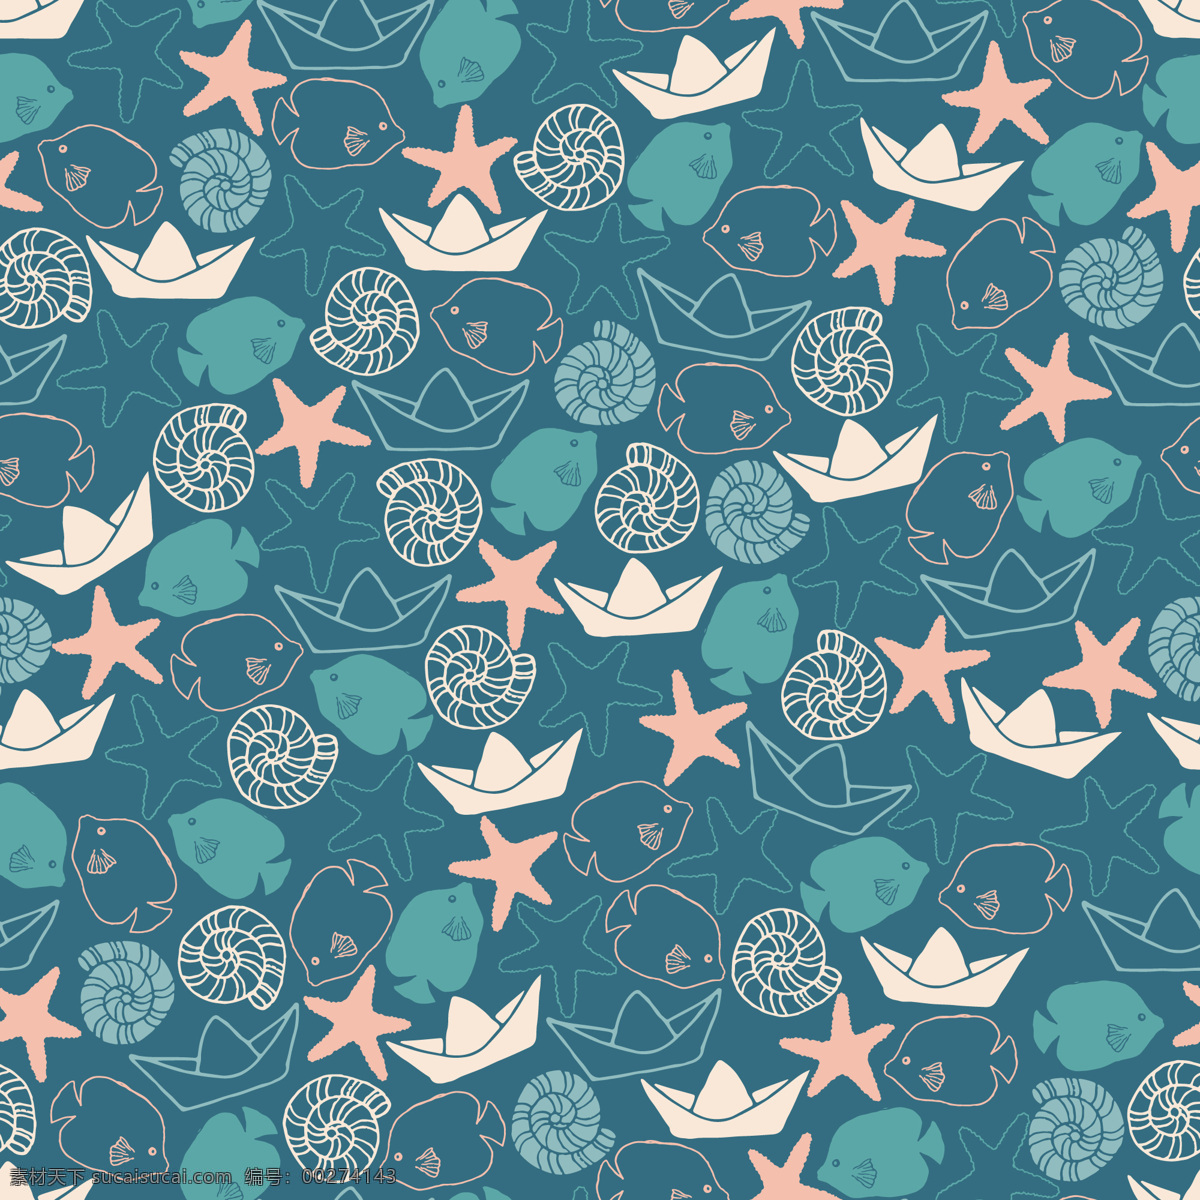 森 系 清新 星星 壁纸 图案 装饰设计 壁纸图案 小鱼 蜗牛 动物元素